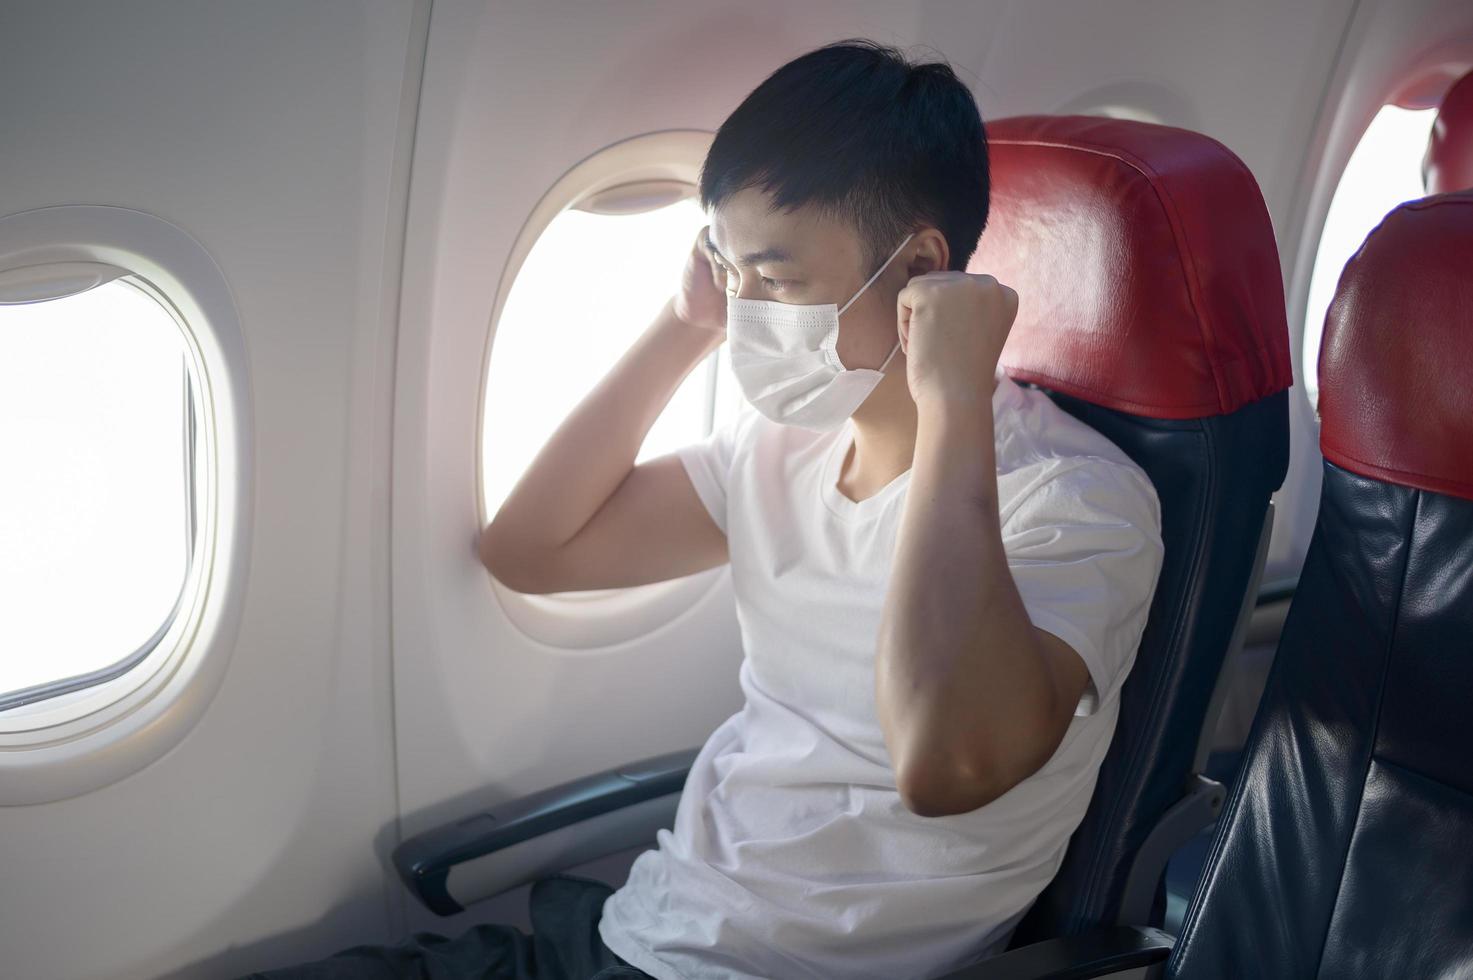 een reizende man draagt een beschermend masker aan boord van het vliegtuig, reist onder covid-19 pandemie, veiligheidsreizen, protocol voor sociale afstand, nieuw normaal reisconcept foto